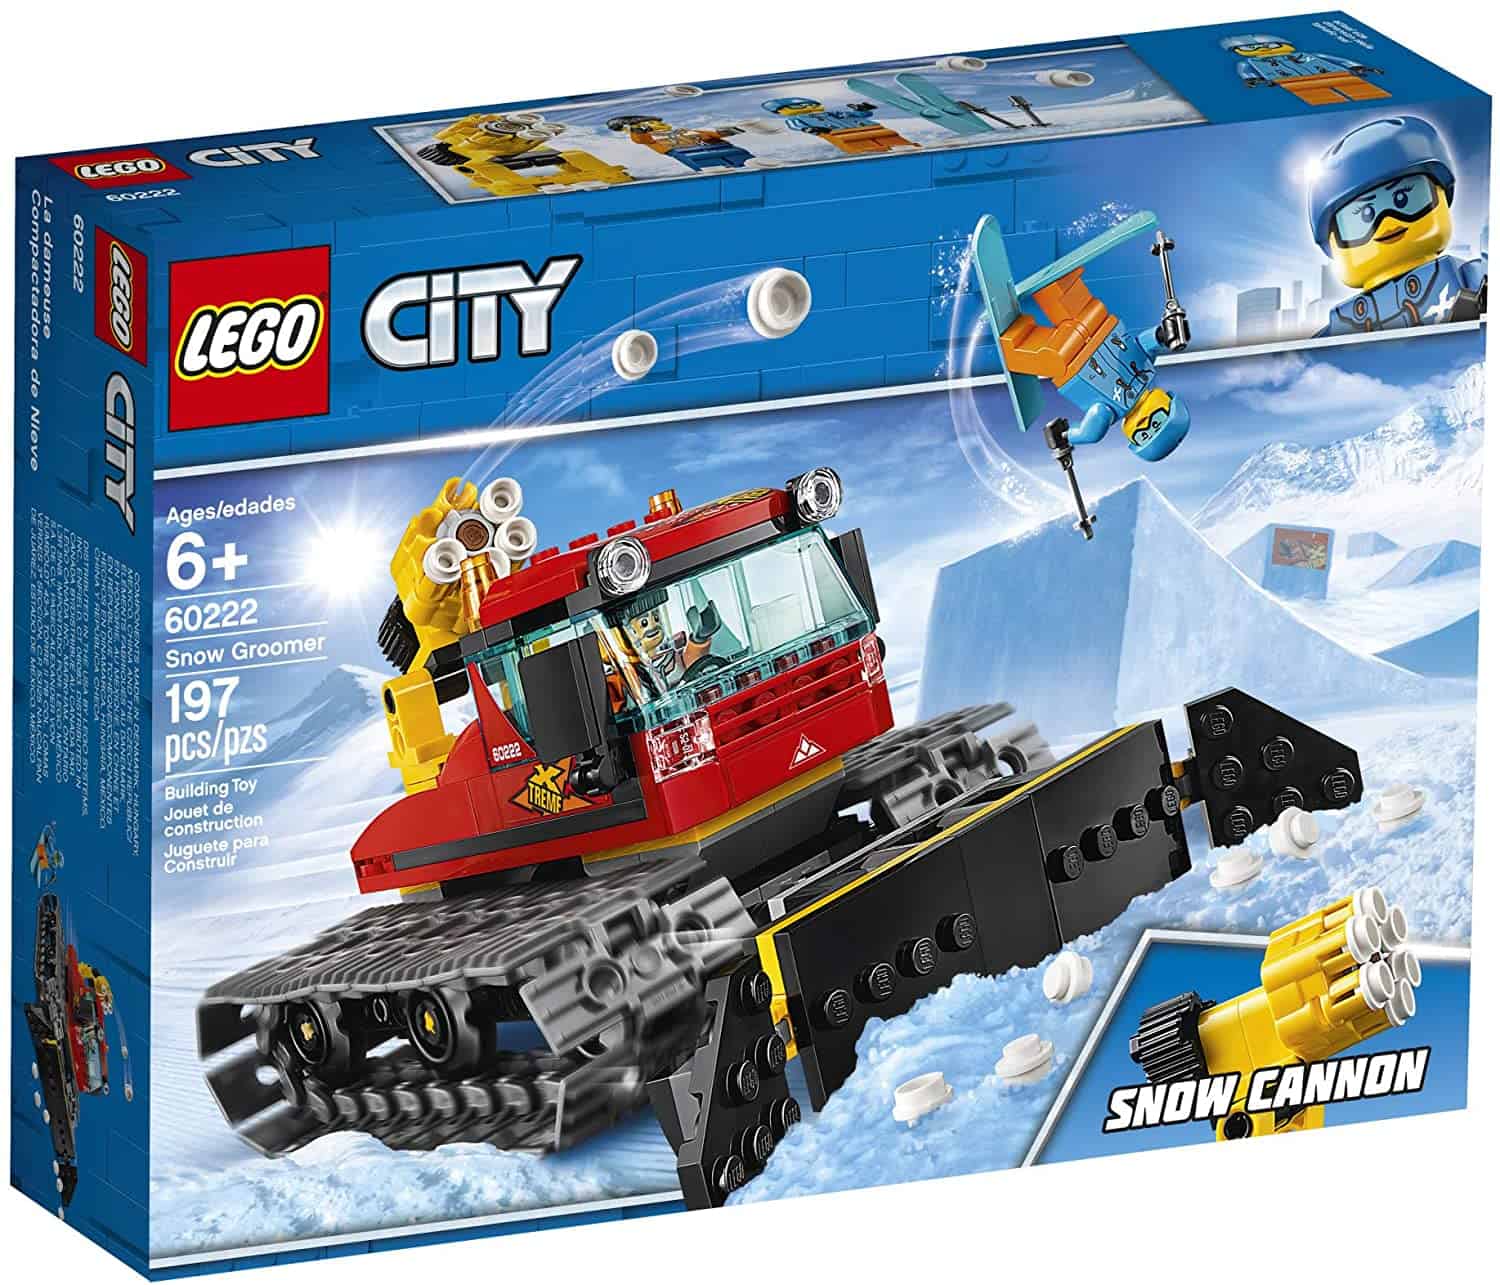 Mejor quitanieves: LEGO City Quitanieves 60222